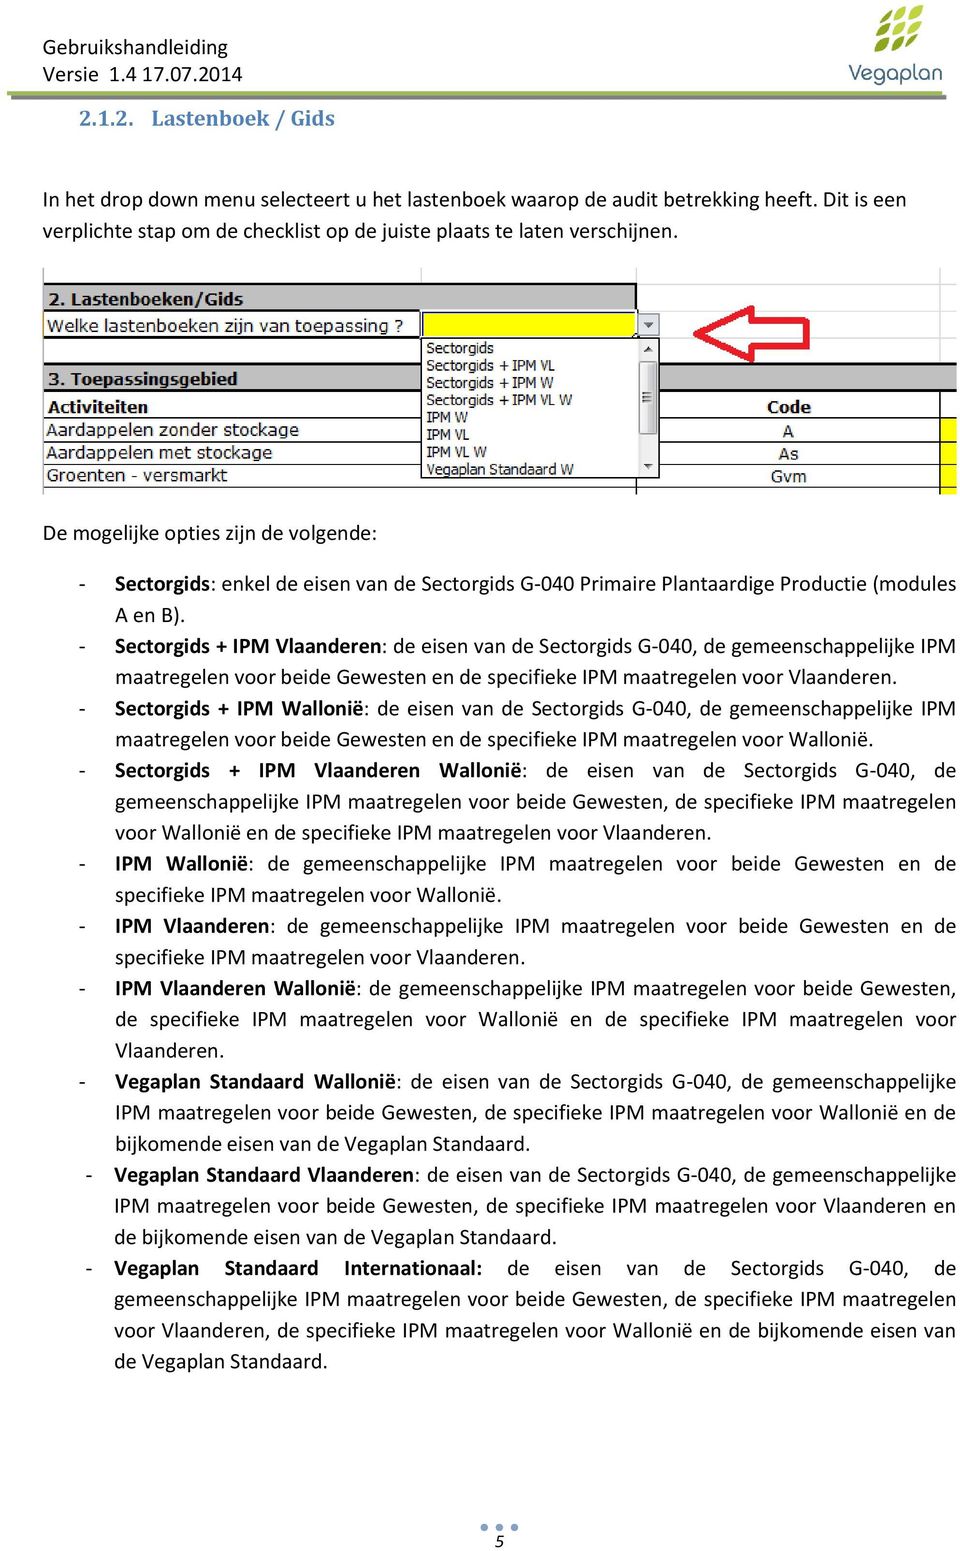 - Sectorgids + IPM Vlaanderen: de eisen van de Sectorgids G-040, de gemeenschappelijke IPM maatregelen voor beide Gewesten en de specifieke IPM maatregelen voor Vlaanderen.